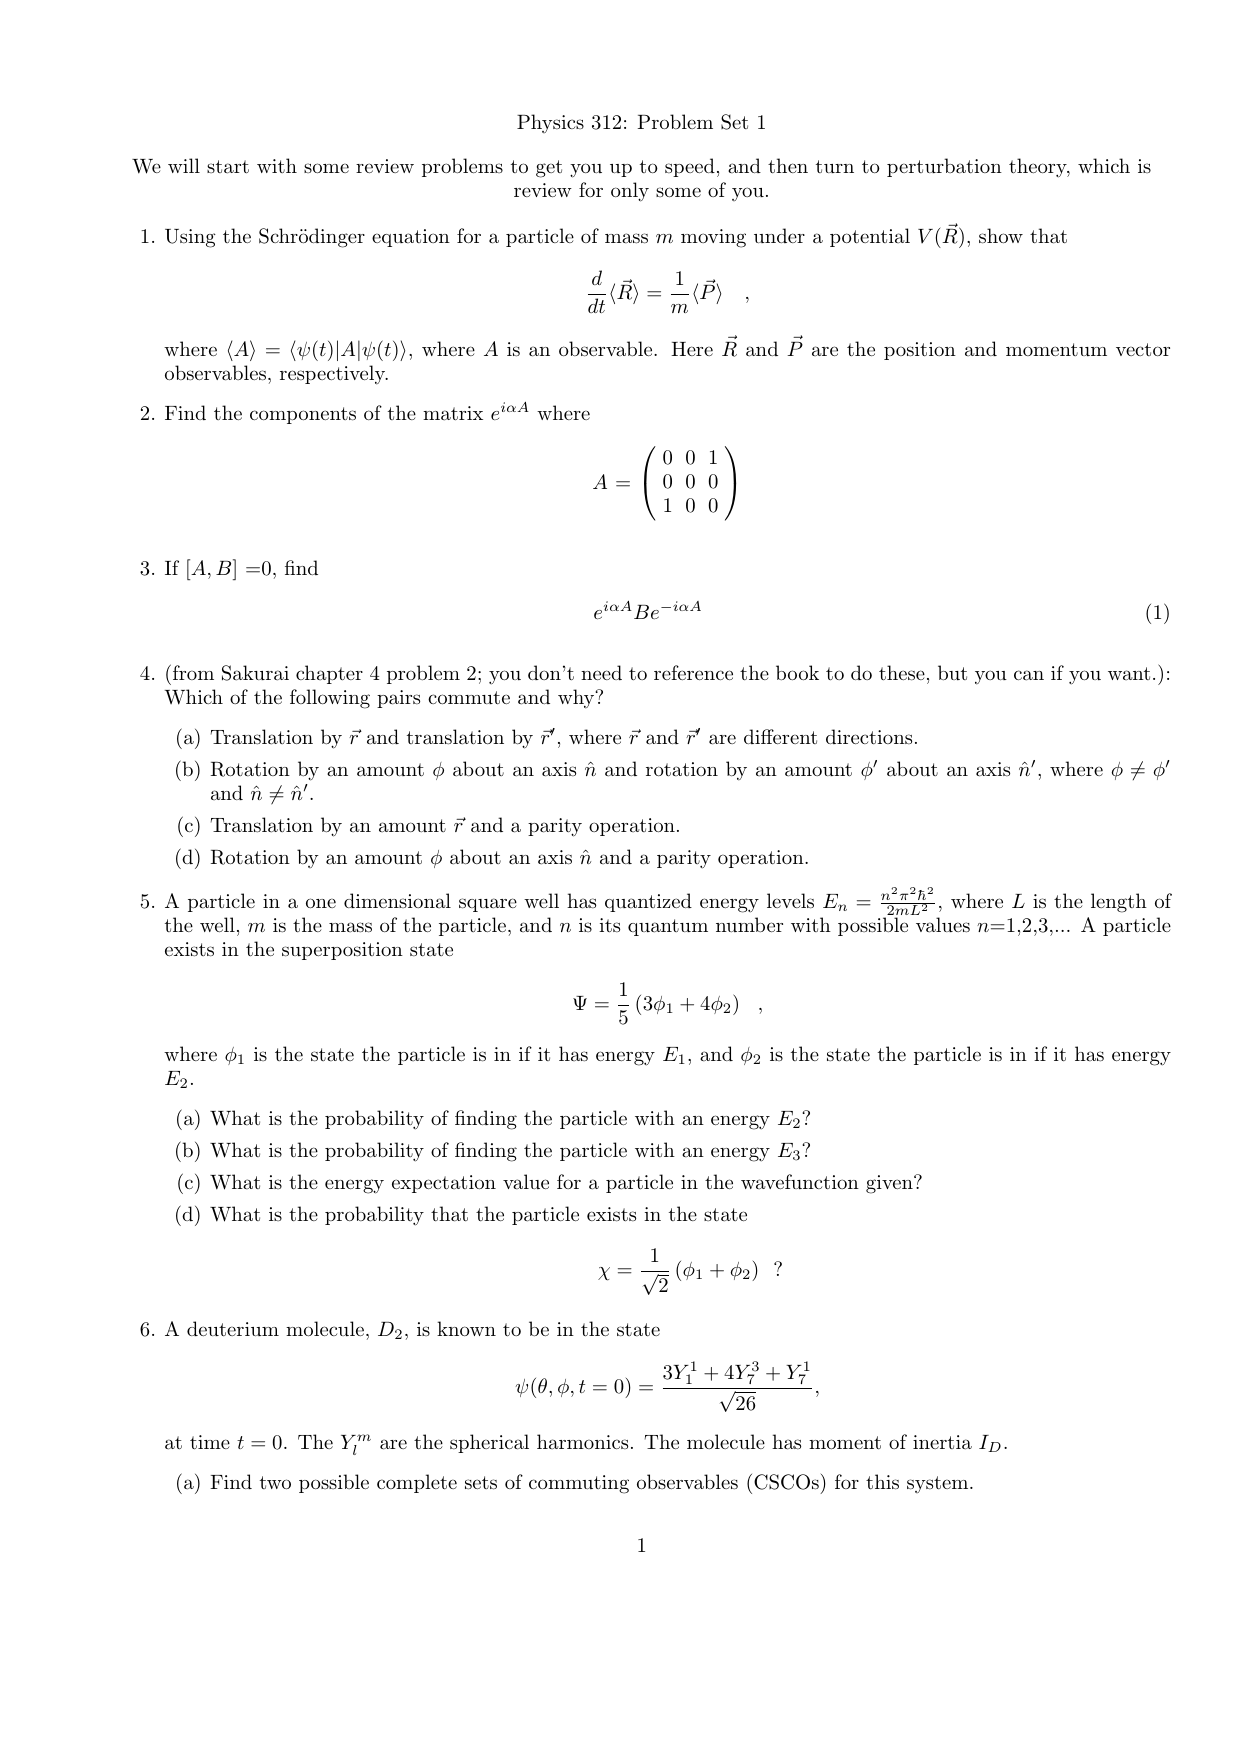 Physics 312 Problem Set 1